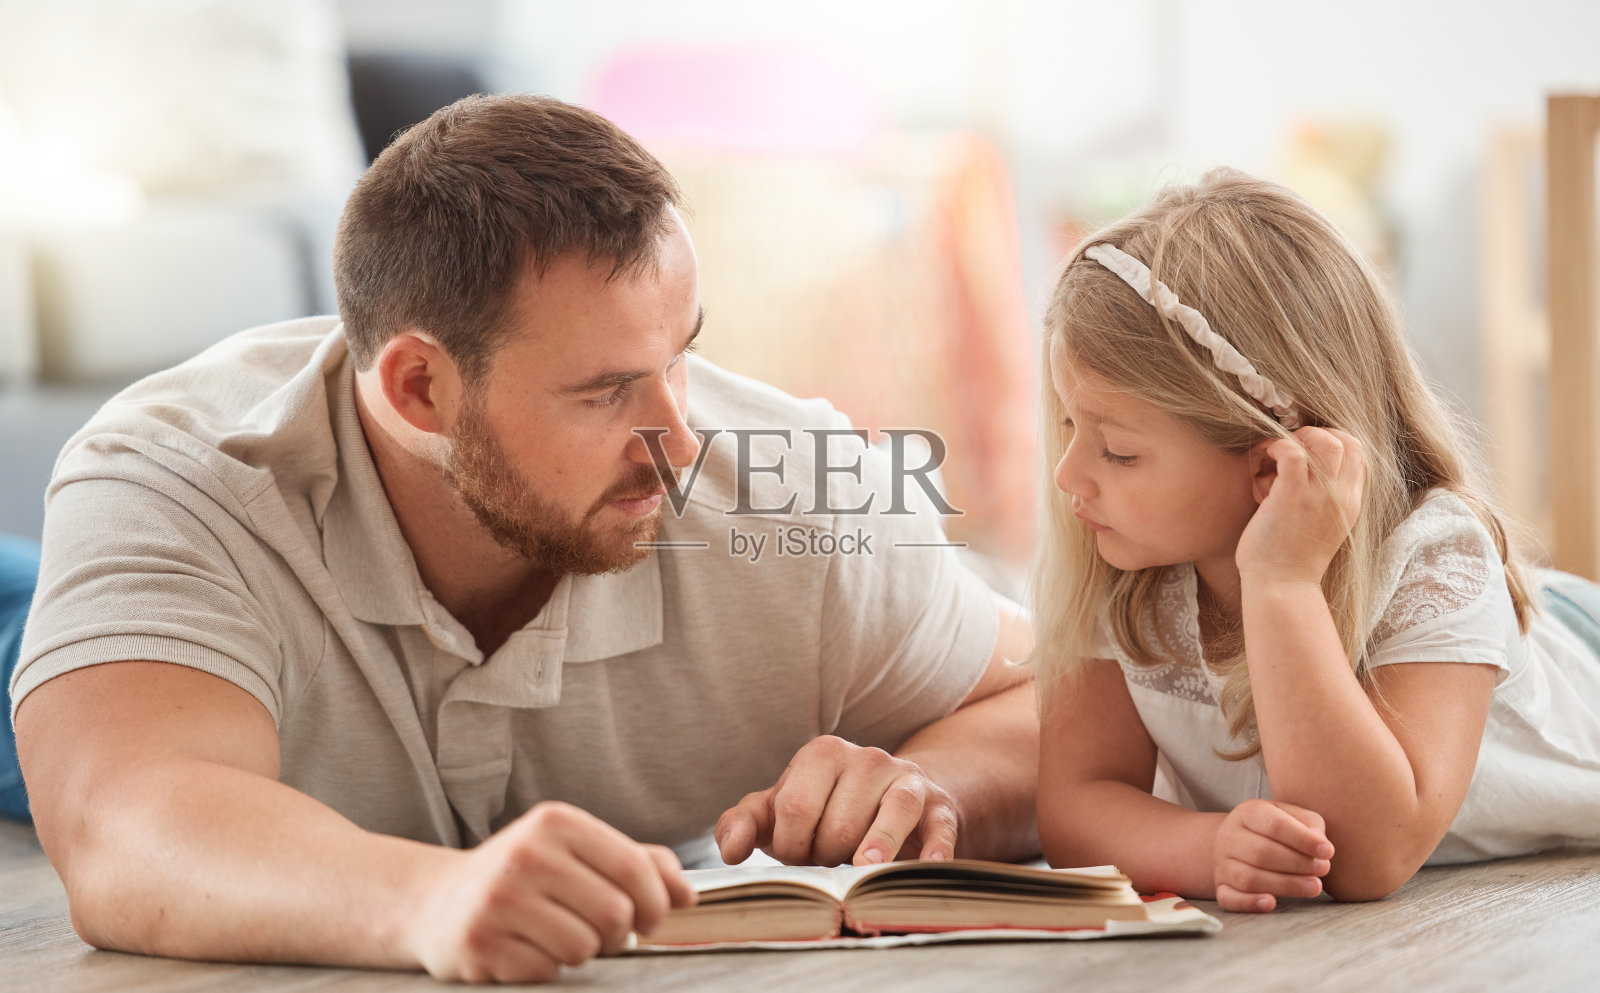 这张照片拍摄的是一对年轻的父亲和女儿在家里一起看书照片摄影图片